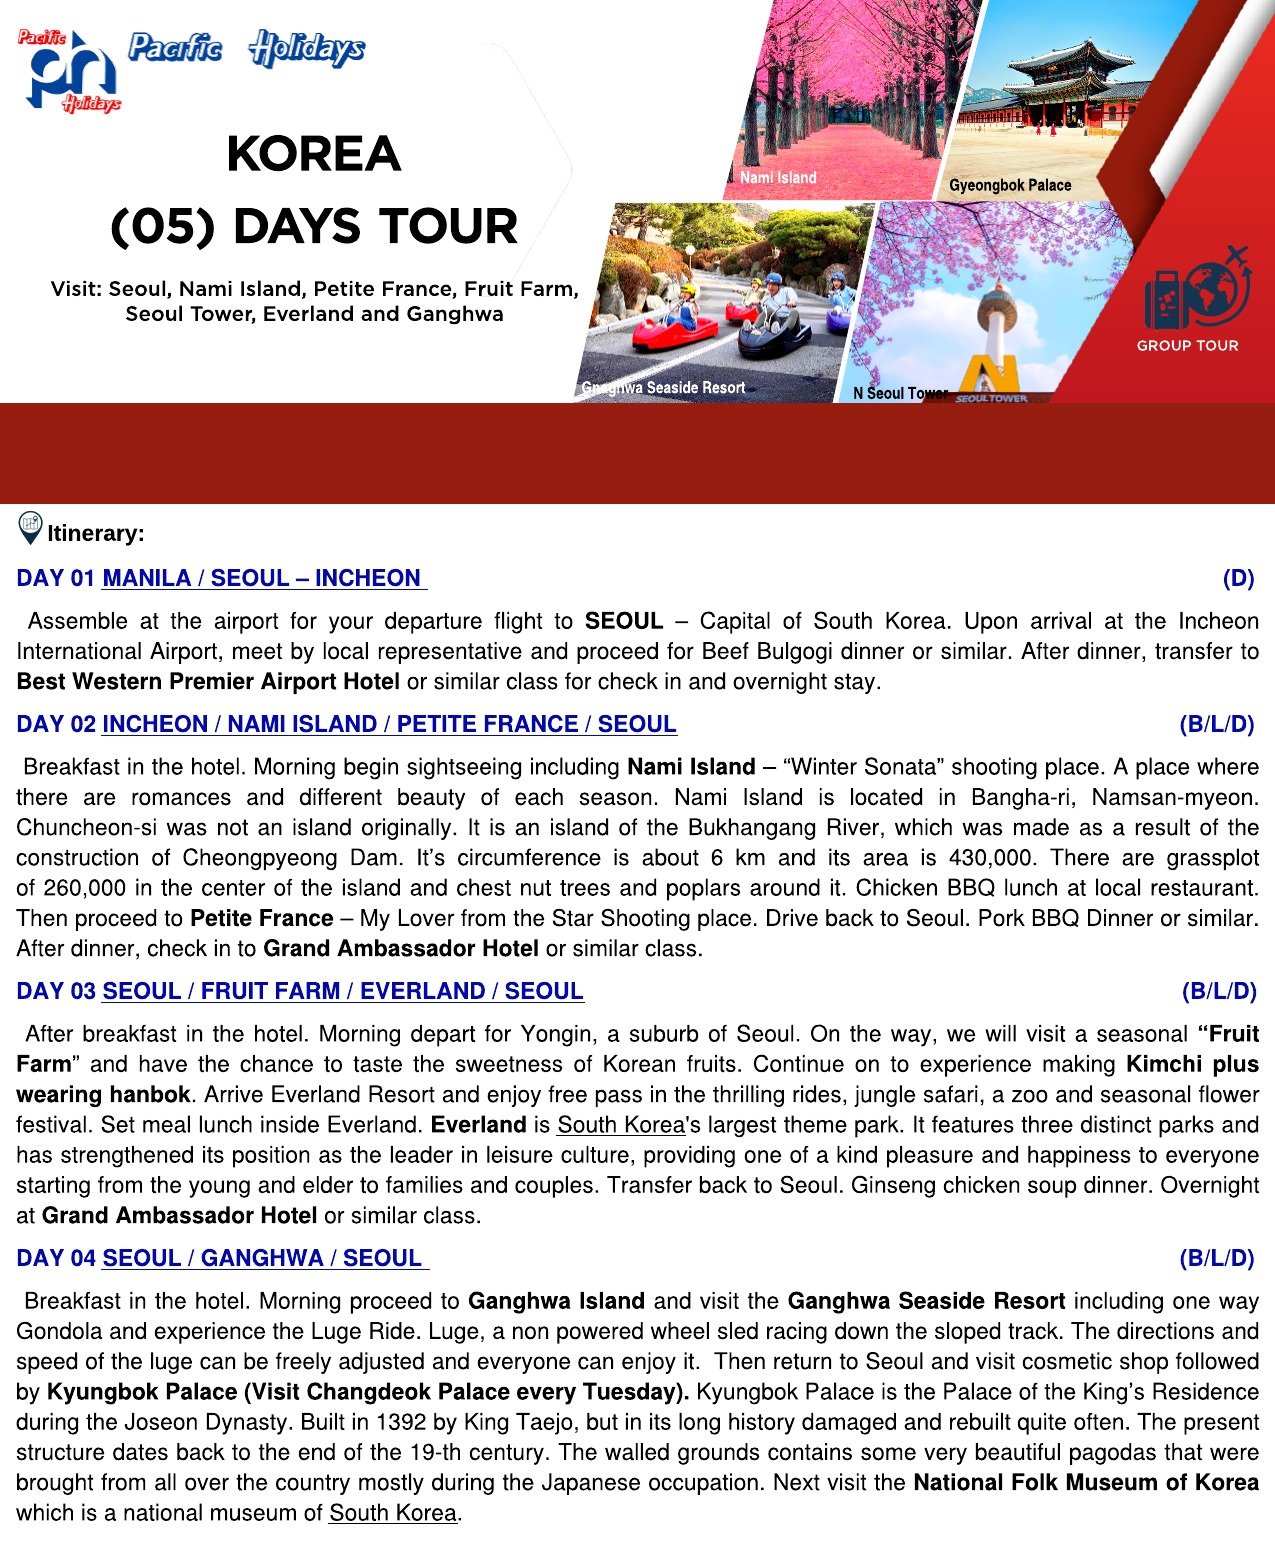 2020 KOREA (5) DAYS TOUR – WO TOUR RATE – Photo and 3 Columns